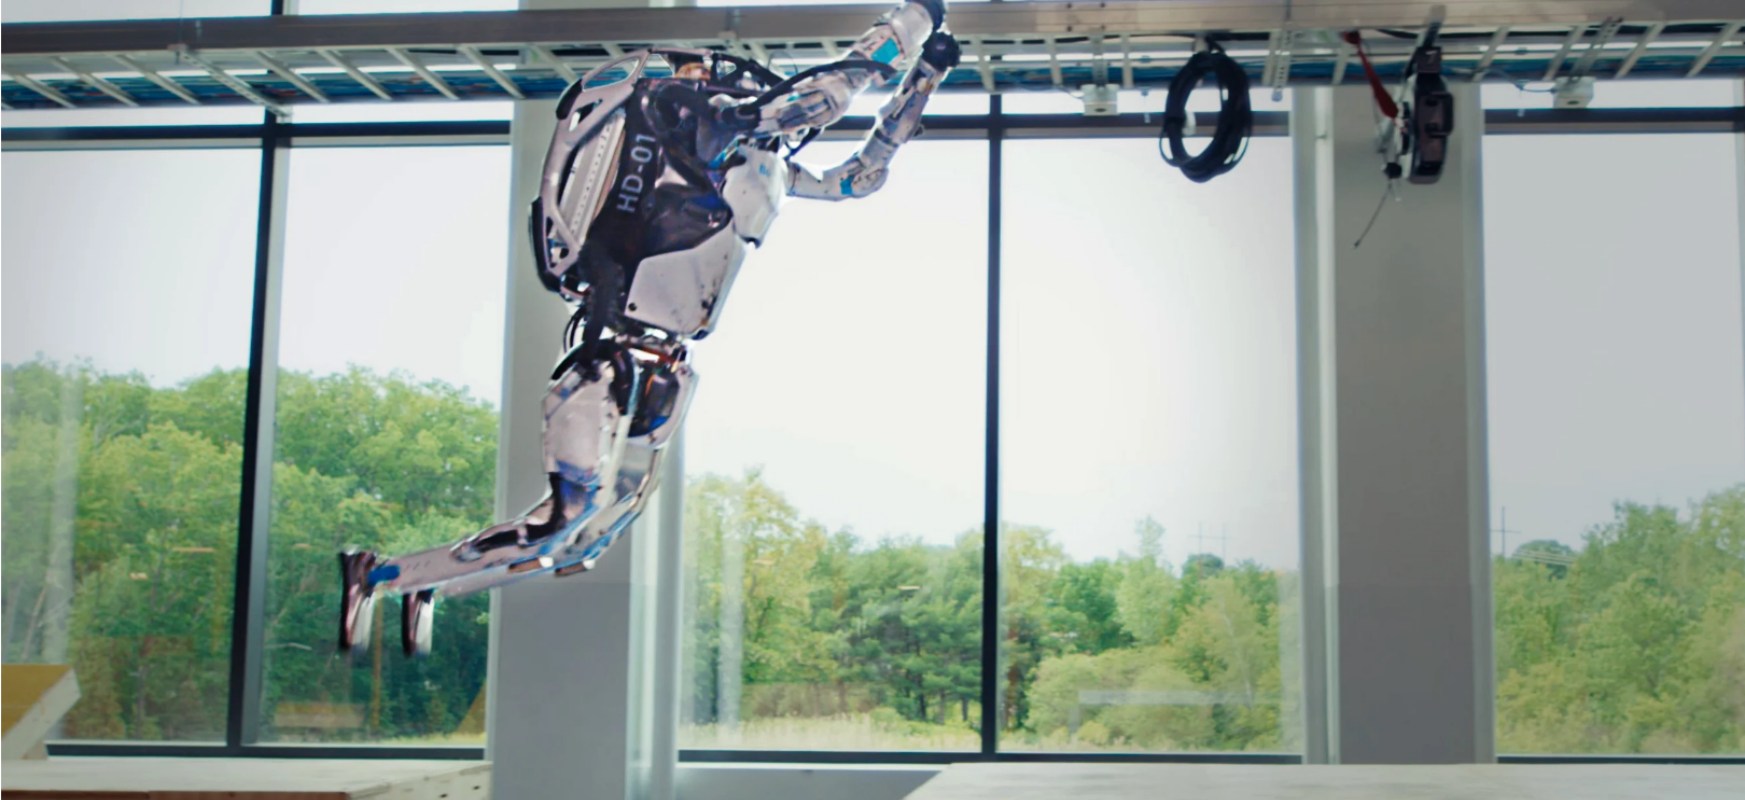 Video des Tages: Roboter von Boston Dynamics umrundet den Hindernisparcours und rollt rückwärts 1